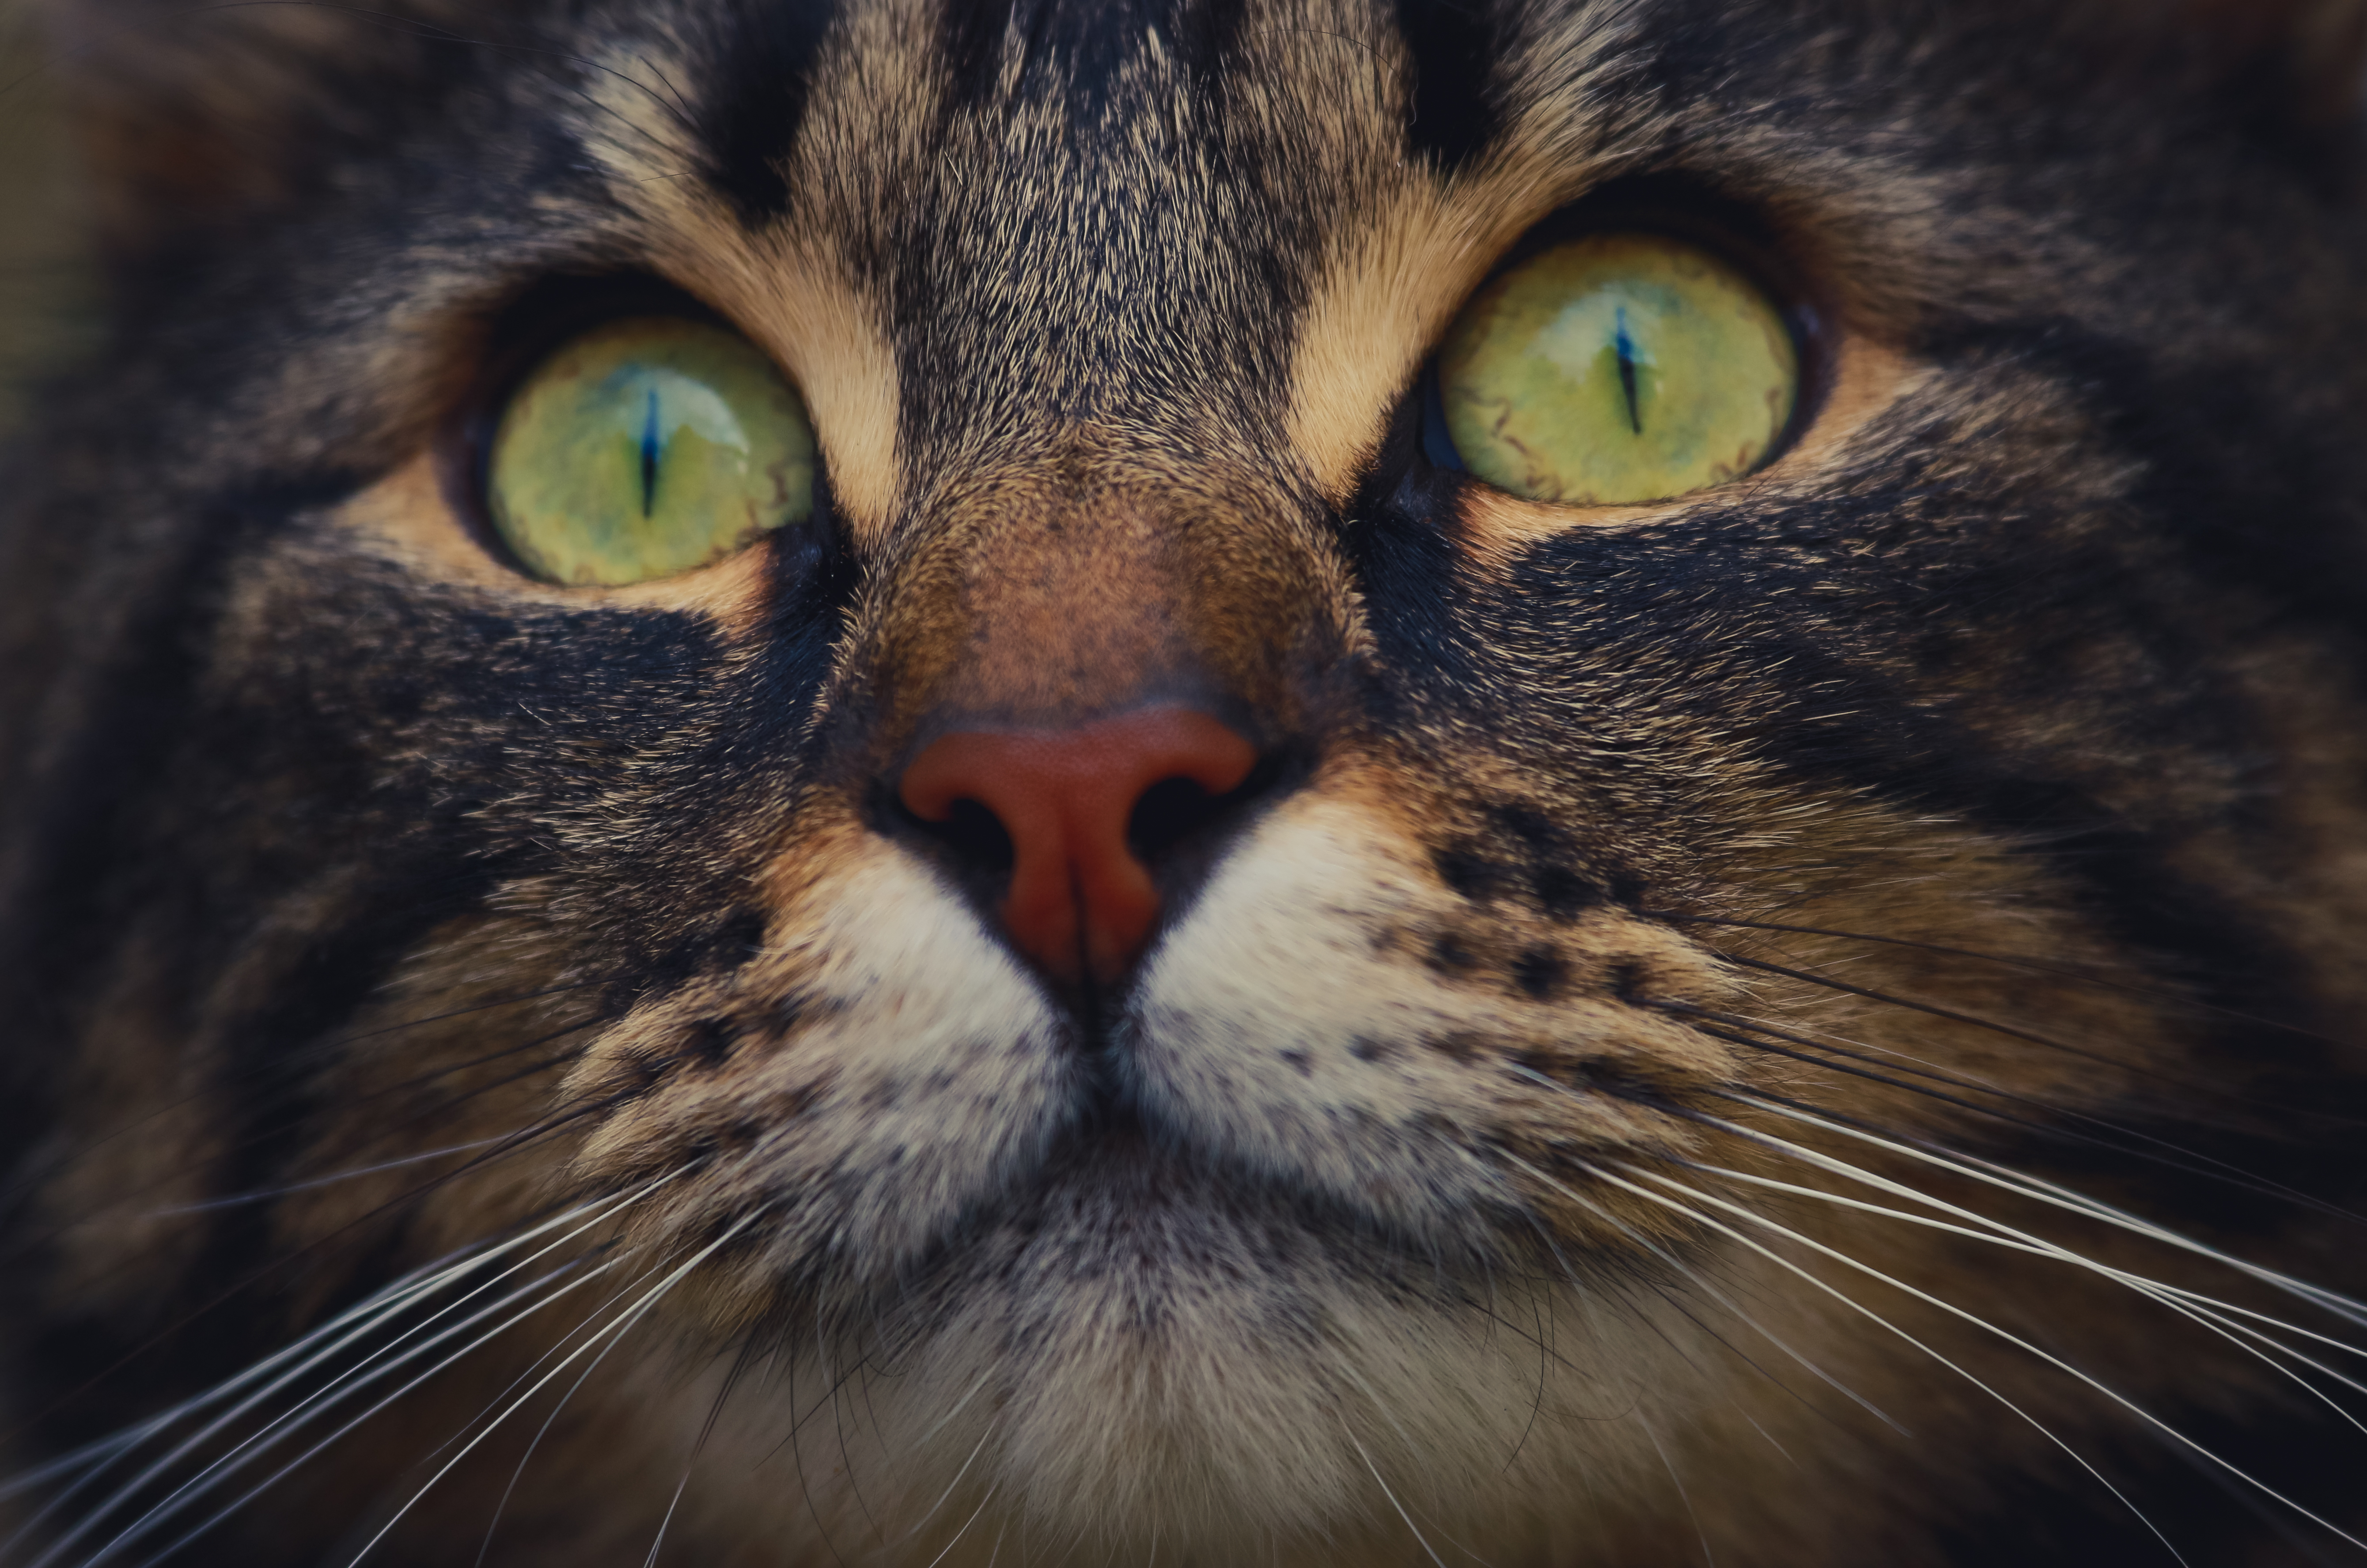 Descarga gratuita de fondo de pantalla para móvil de Animales, Gatos, Gato, Gatito, De Cerca, Cara.